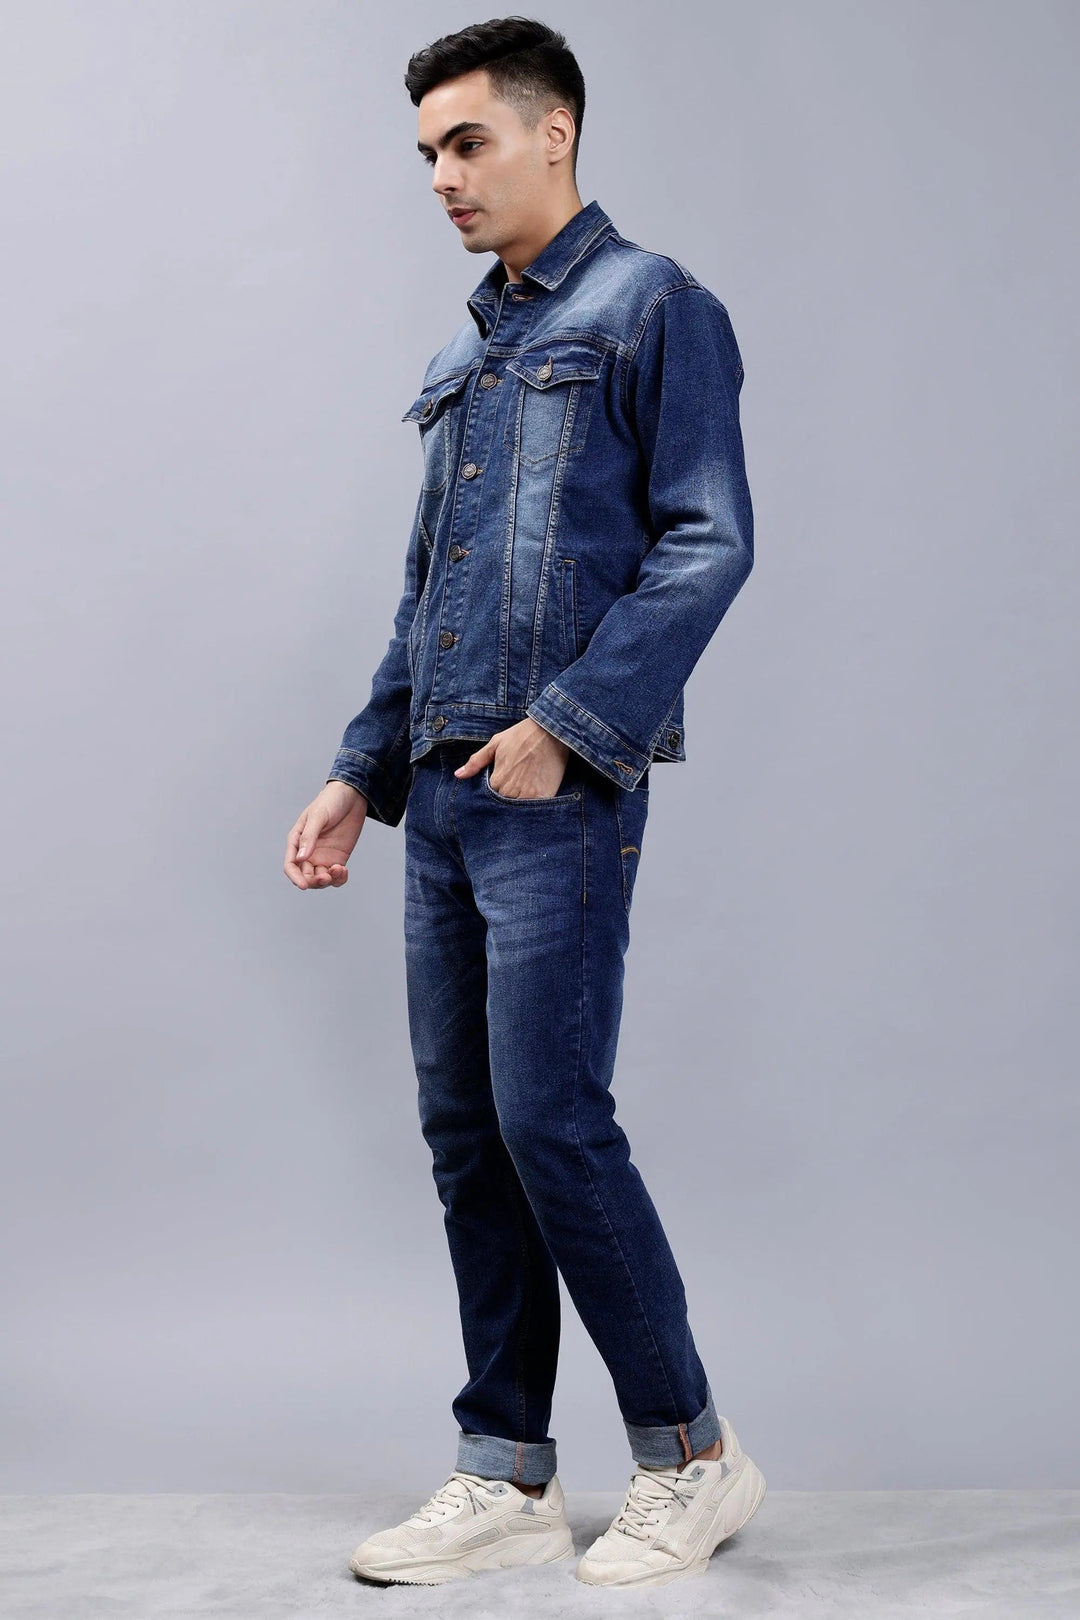 Regular Fit Blue Denim Cargo & Jacket Co-ord Set for Men - Peplos Jeans 